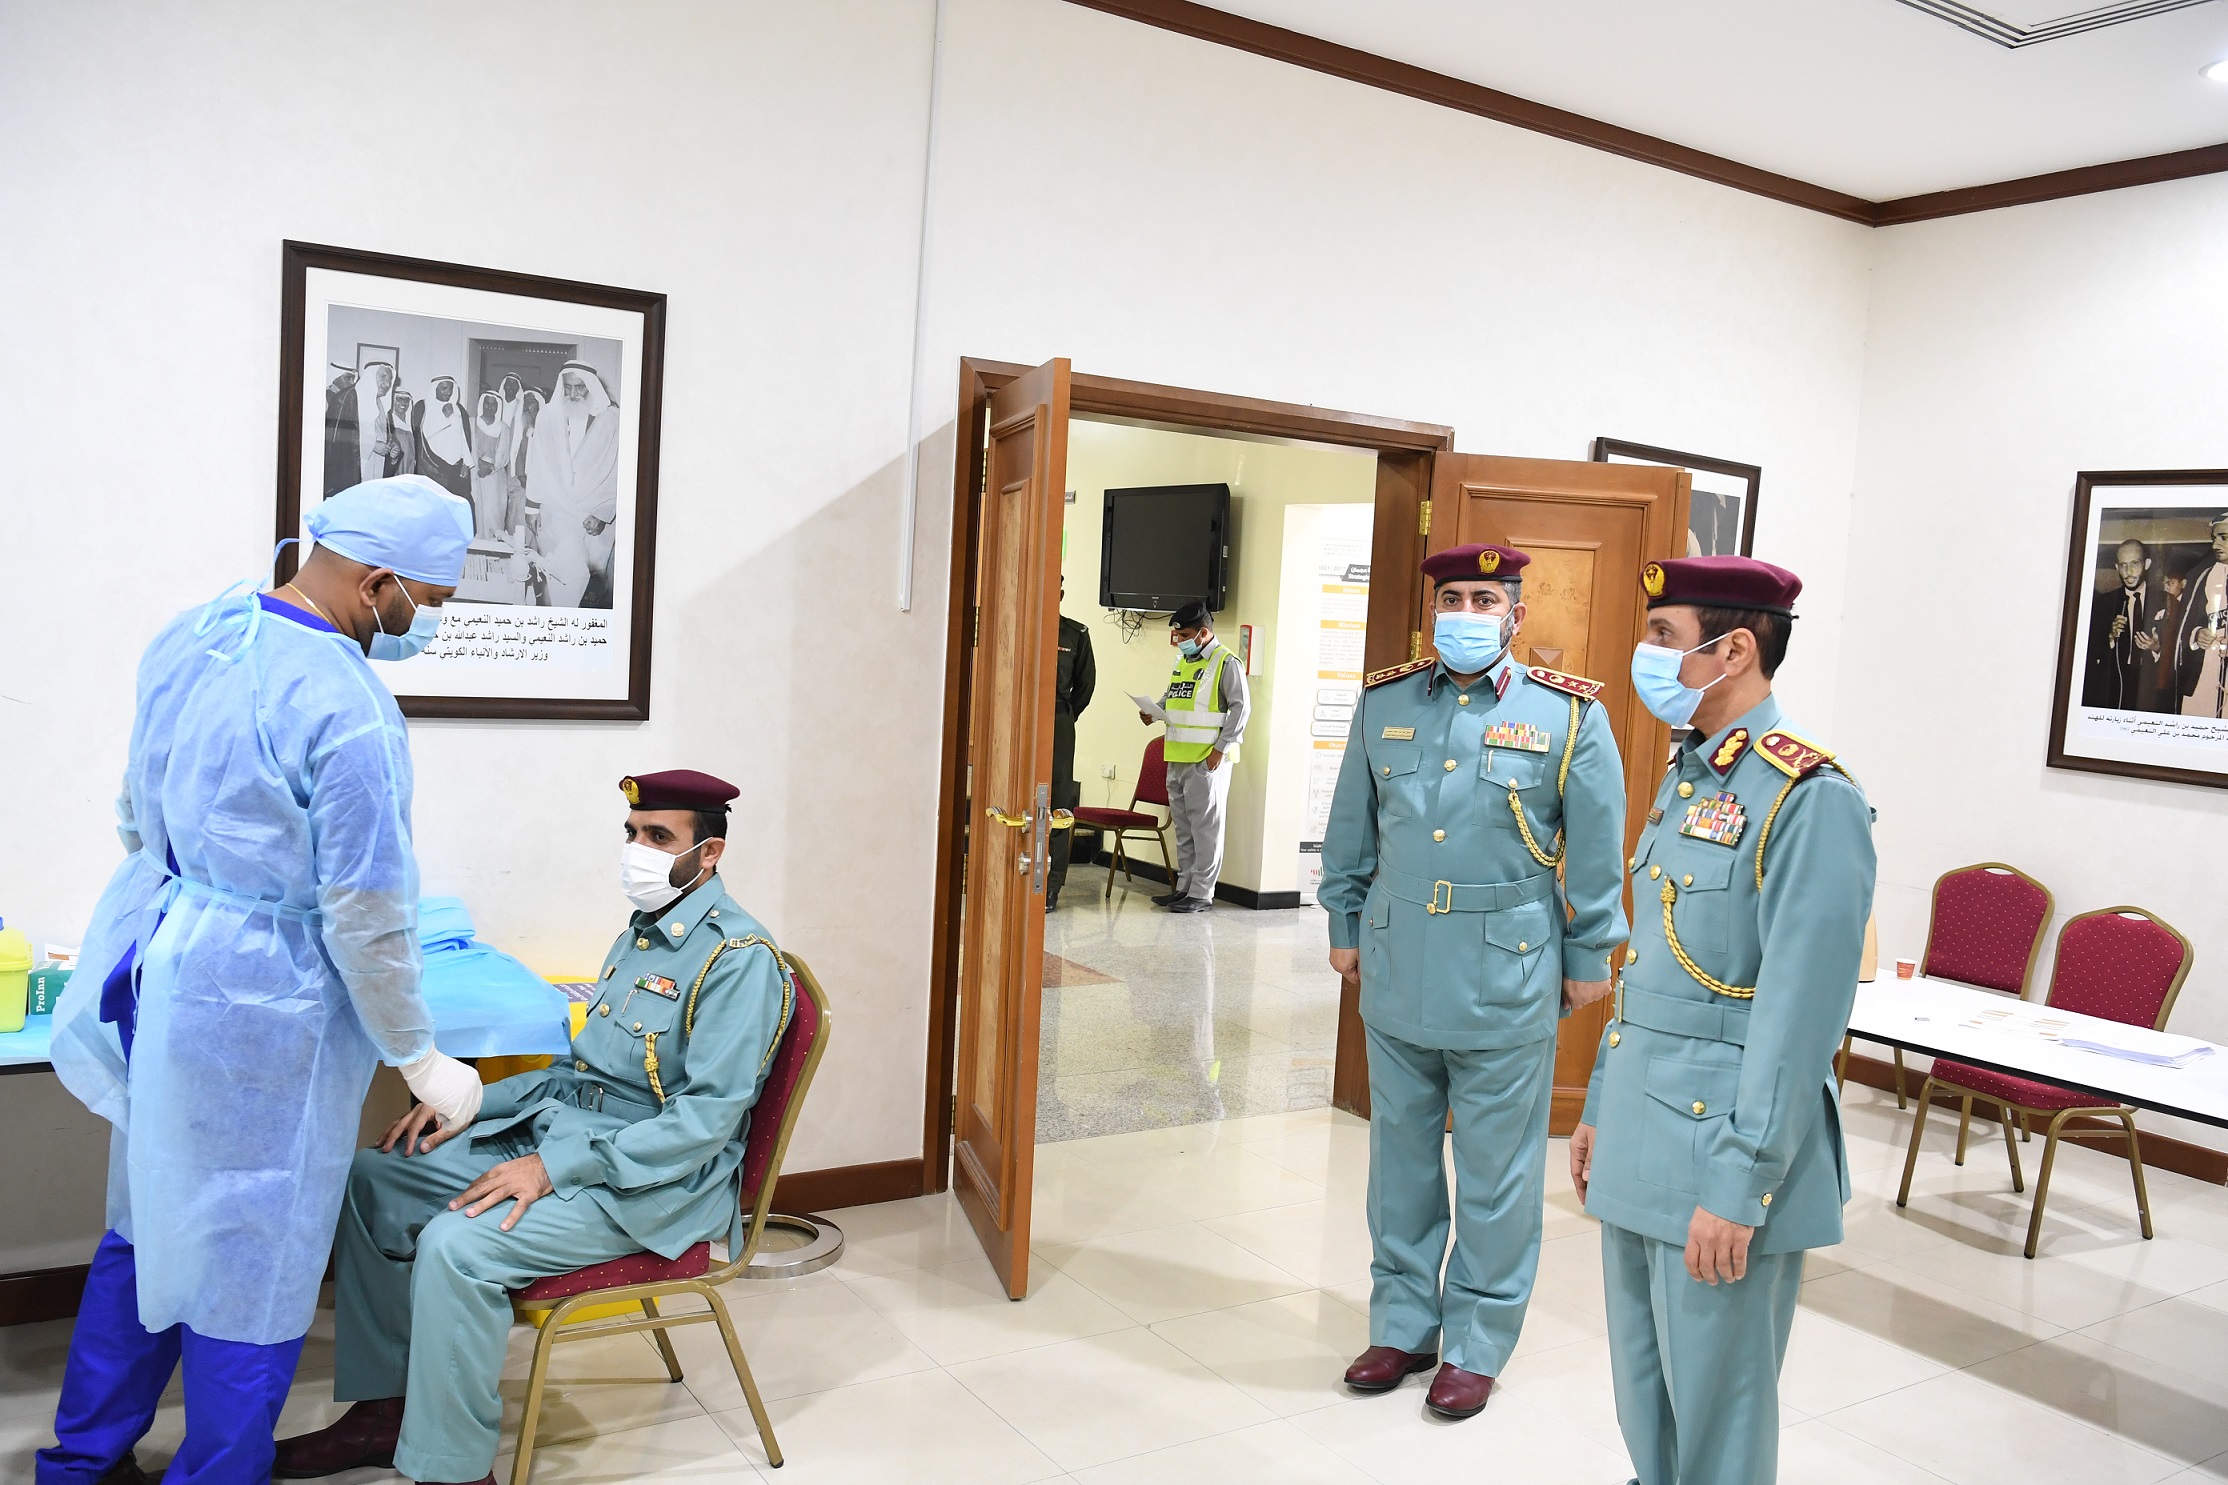 اللواء الشيخ سلطان النعيمي يدعوا ويحفز الموظفين لتلقي تطعيم لقاح كوفيد 19